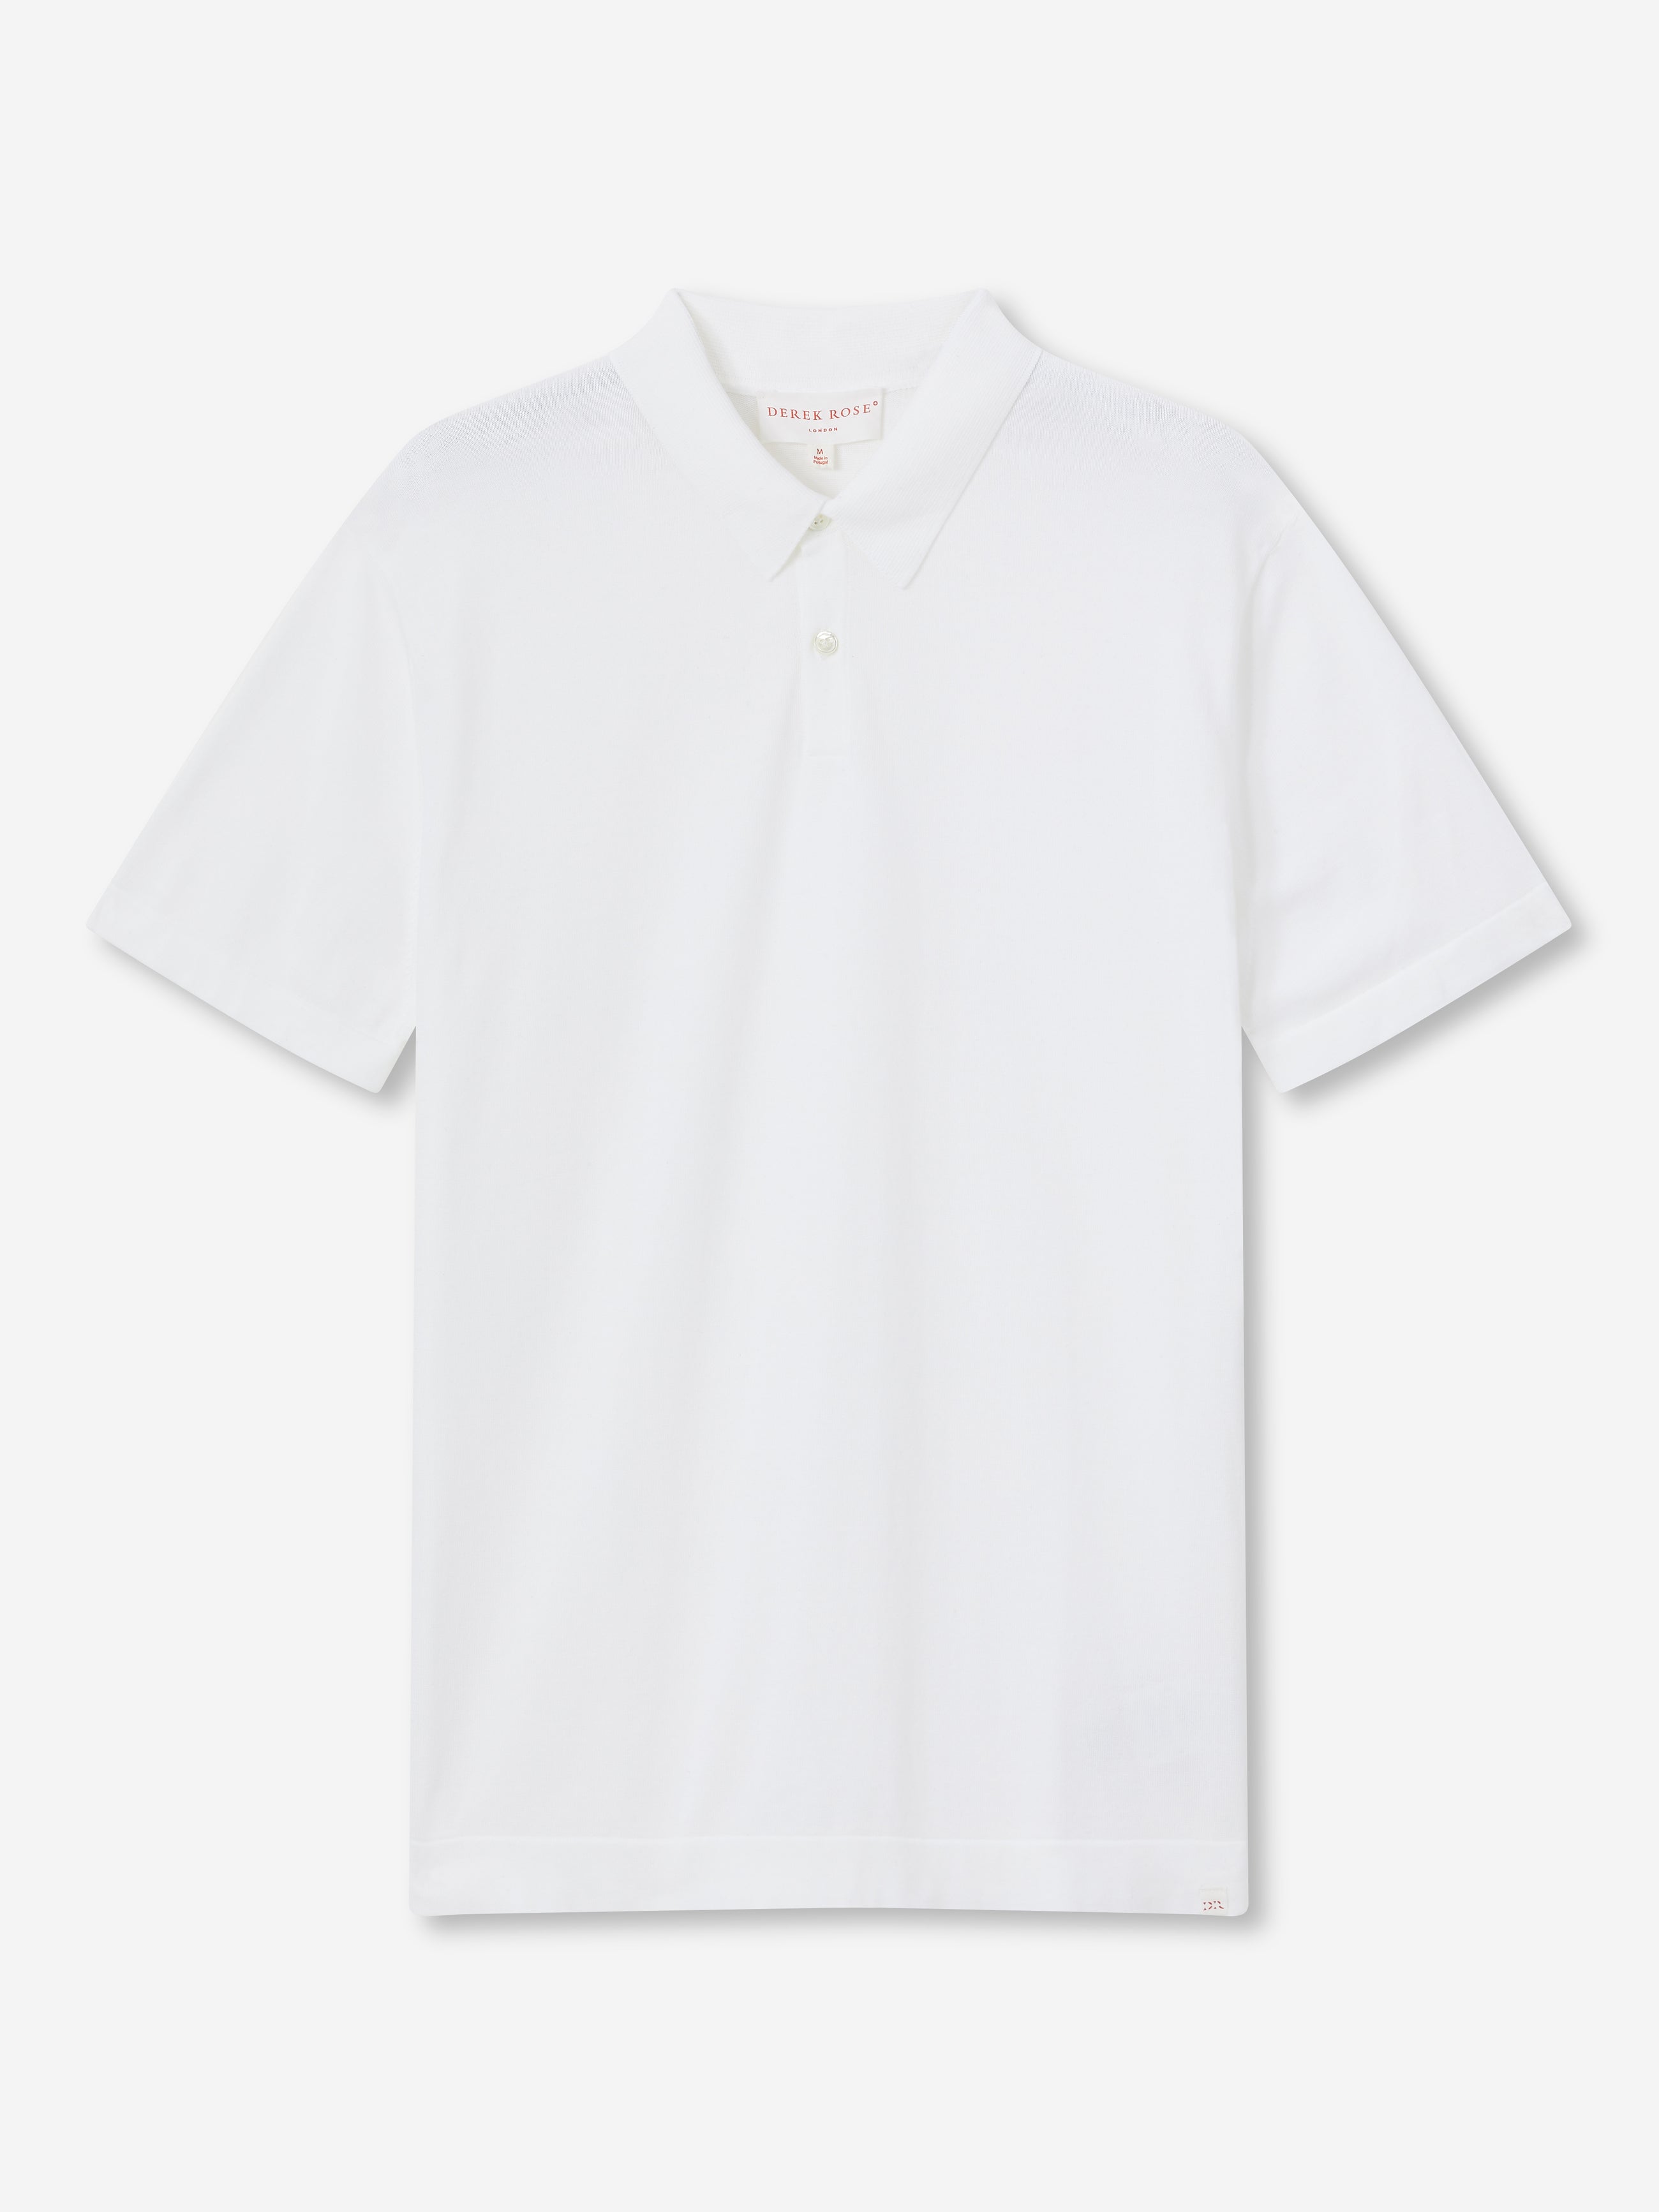 Men's Polo Shirt Jacob Sea Island Cotton White